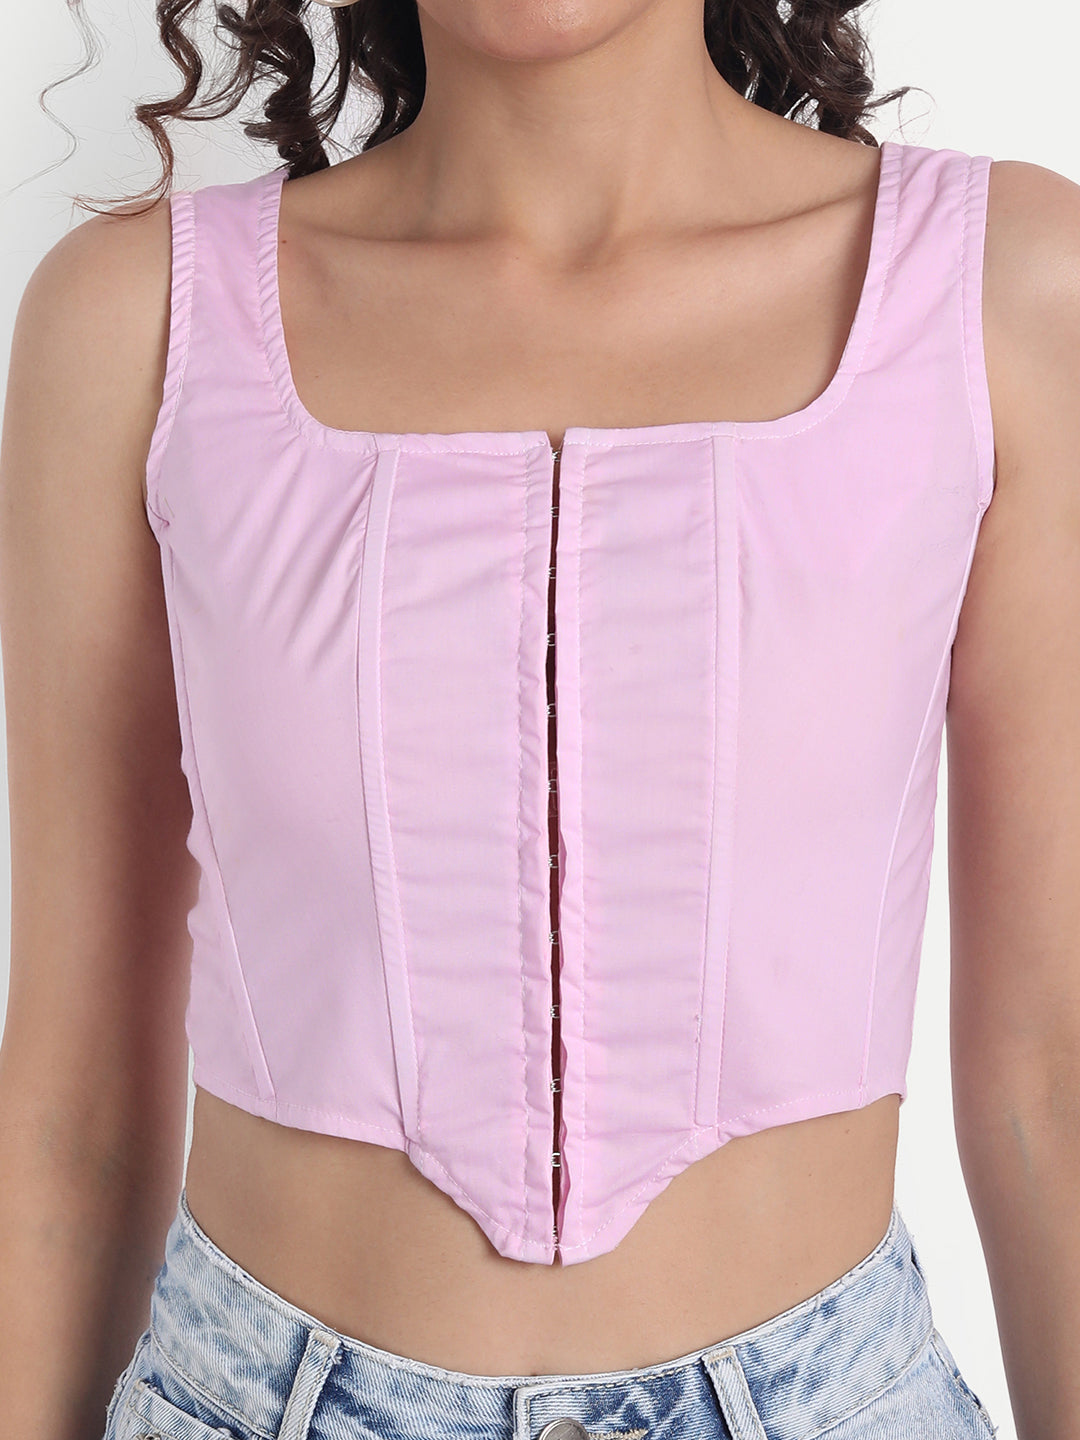 Shea Pink corset top - Emprall 